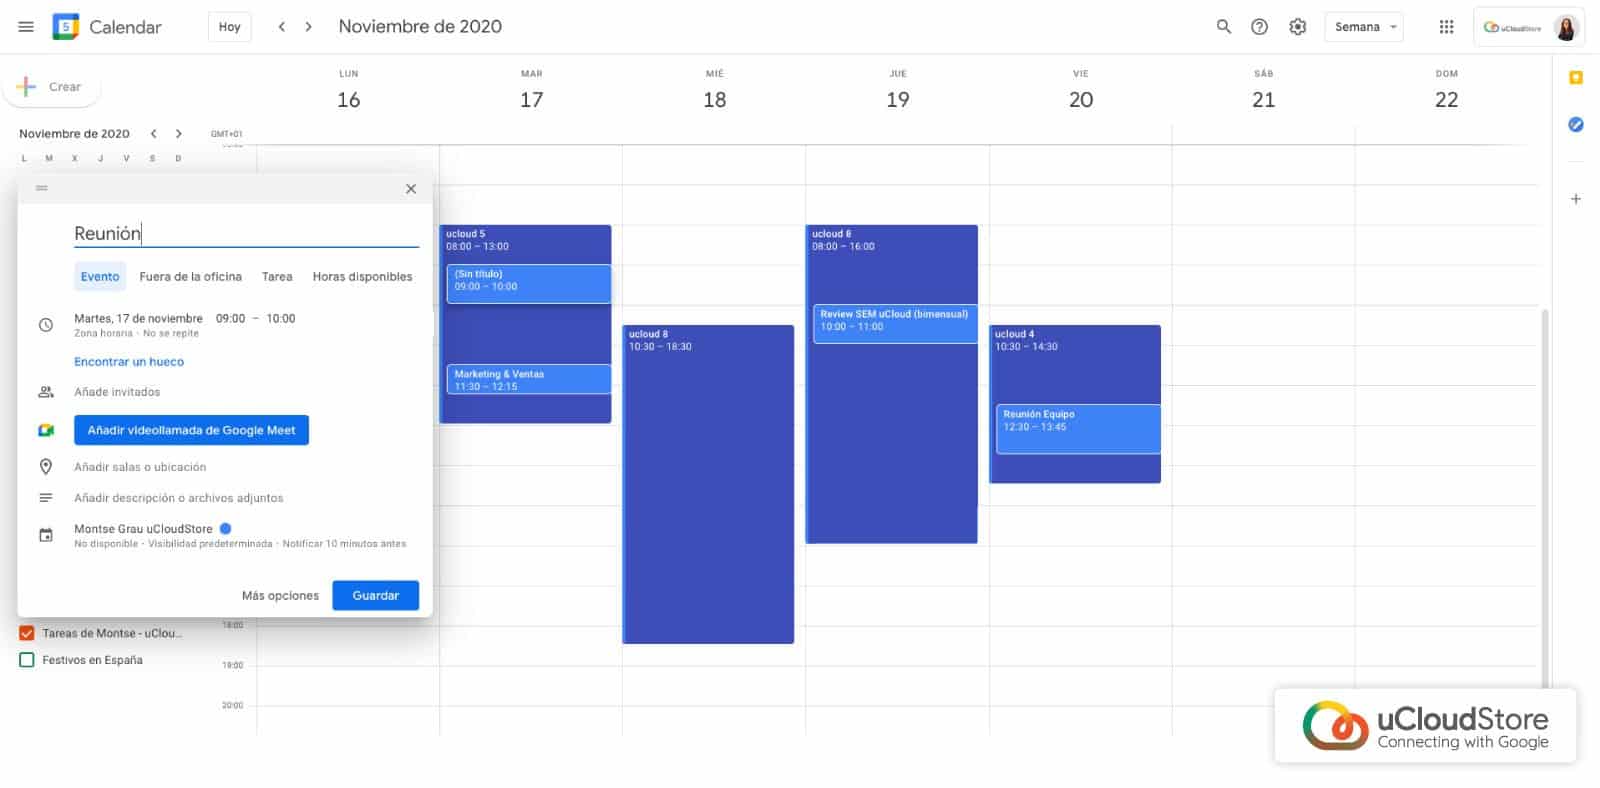 Imagen de creación de eventos Google Meet desde Calendar